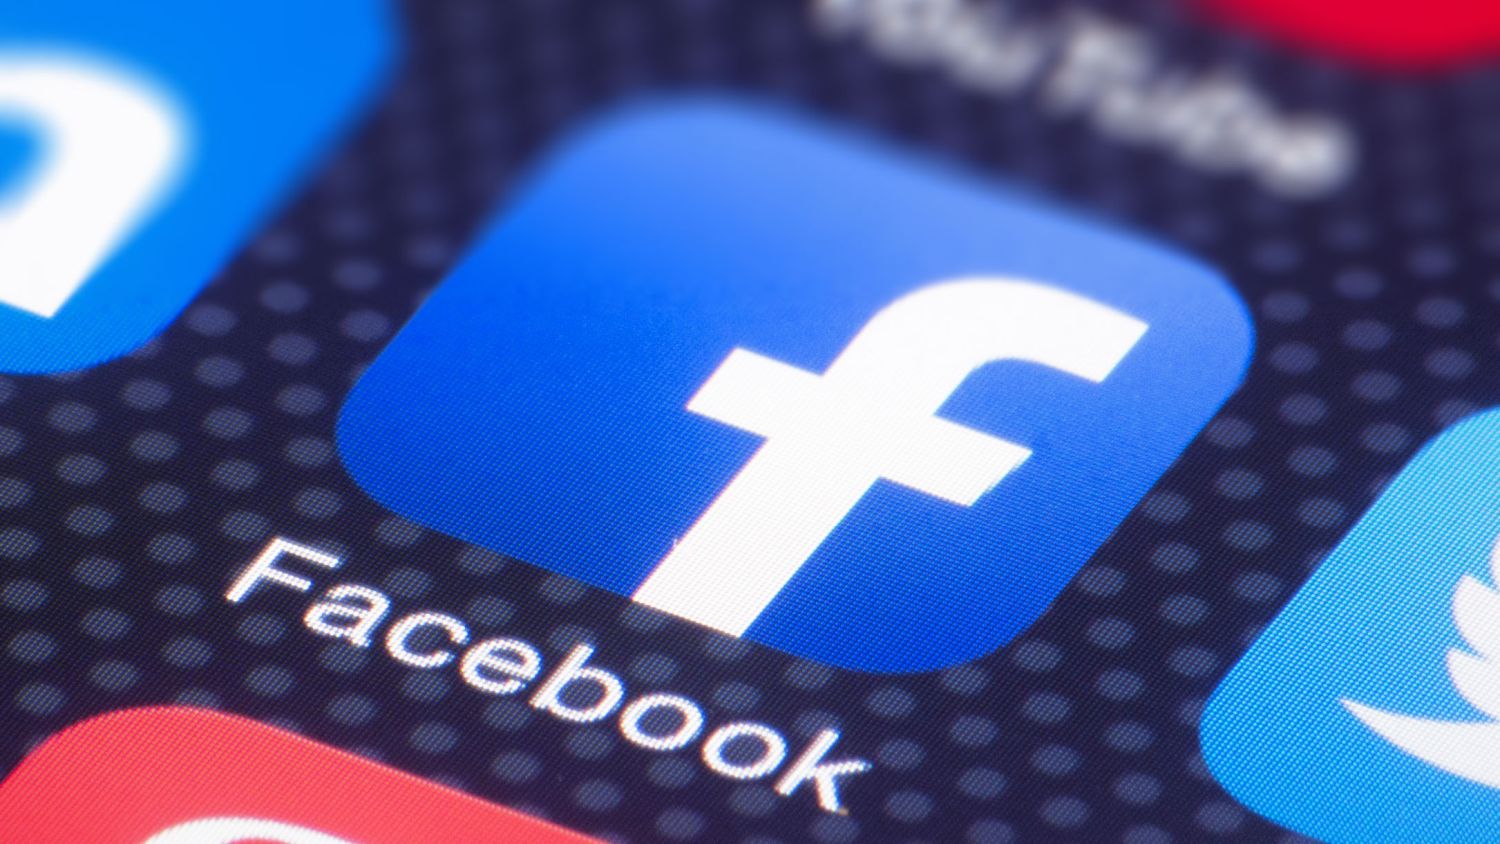 O persoană fizică a fost amendată pentru că postările pe Facebook nu au respectat regulile GDPR